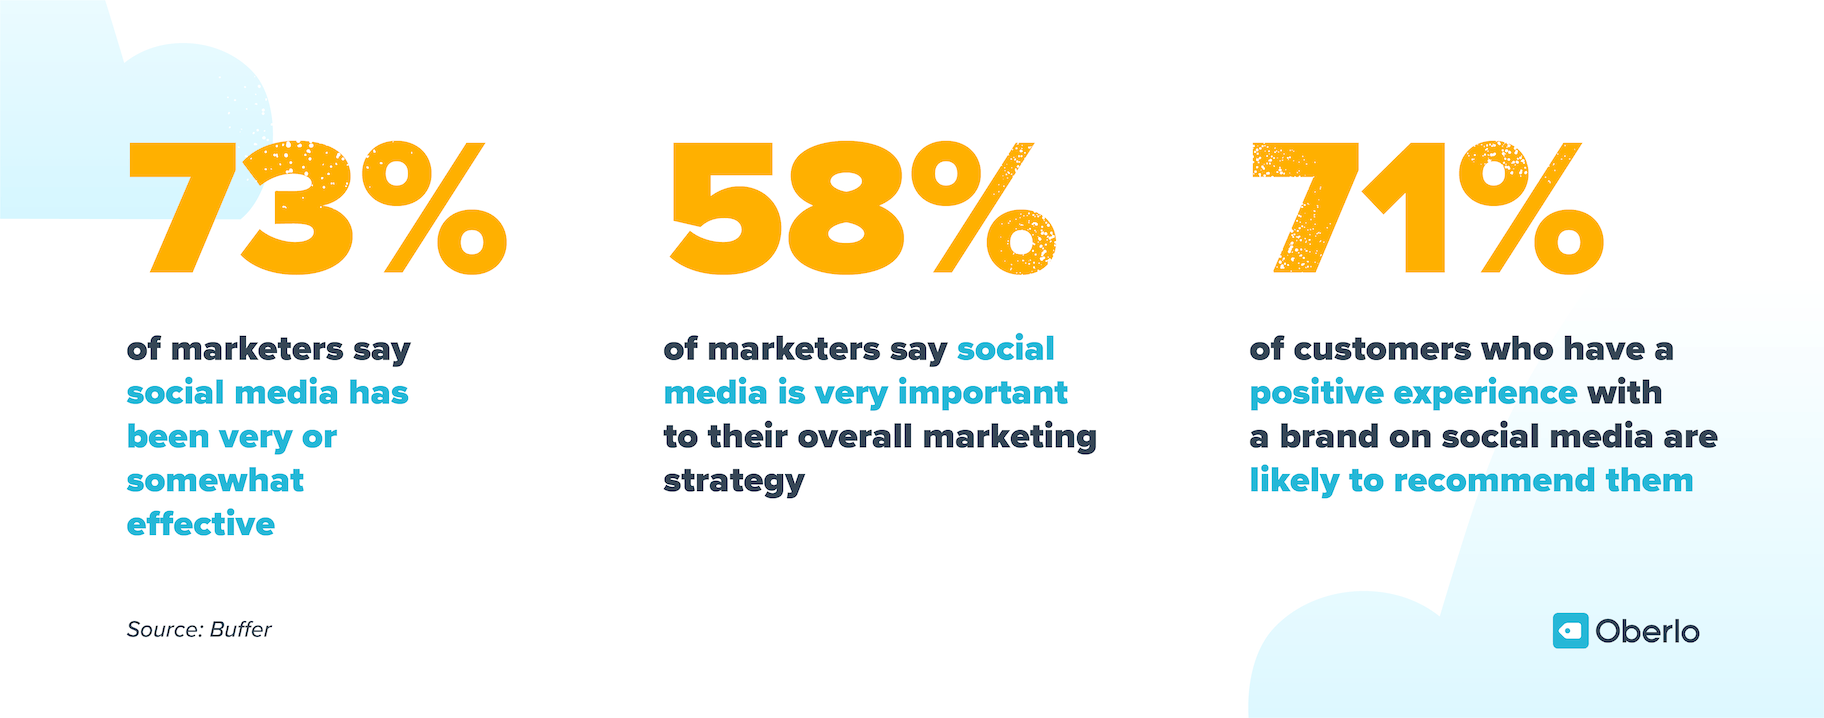 73%的营销人员表示社交媒体营销非常或有些有效，58%的营销人员表示社交媒体对他们的整体战略非常重要，在社交媒体上对品牌有积极体验的客户中，71%的客户可能会推荐该品牌